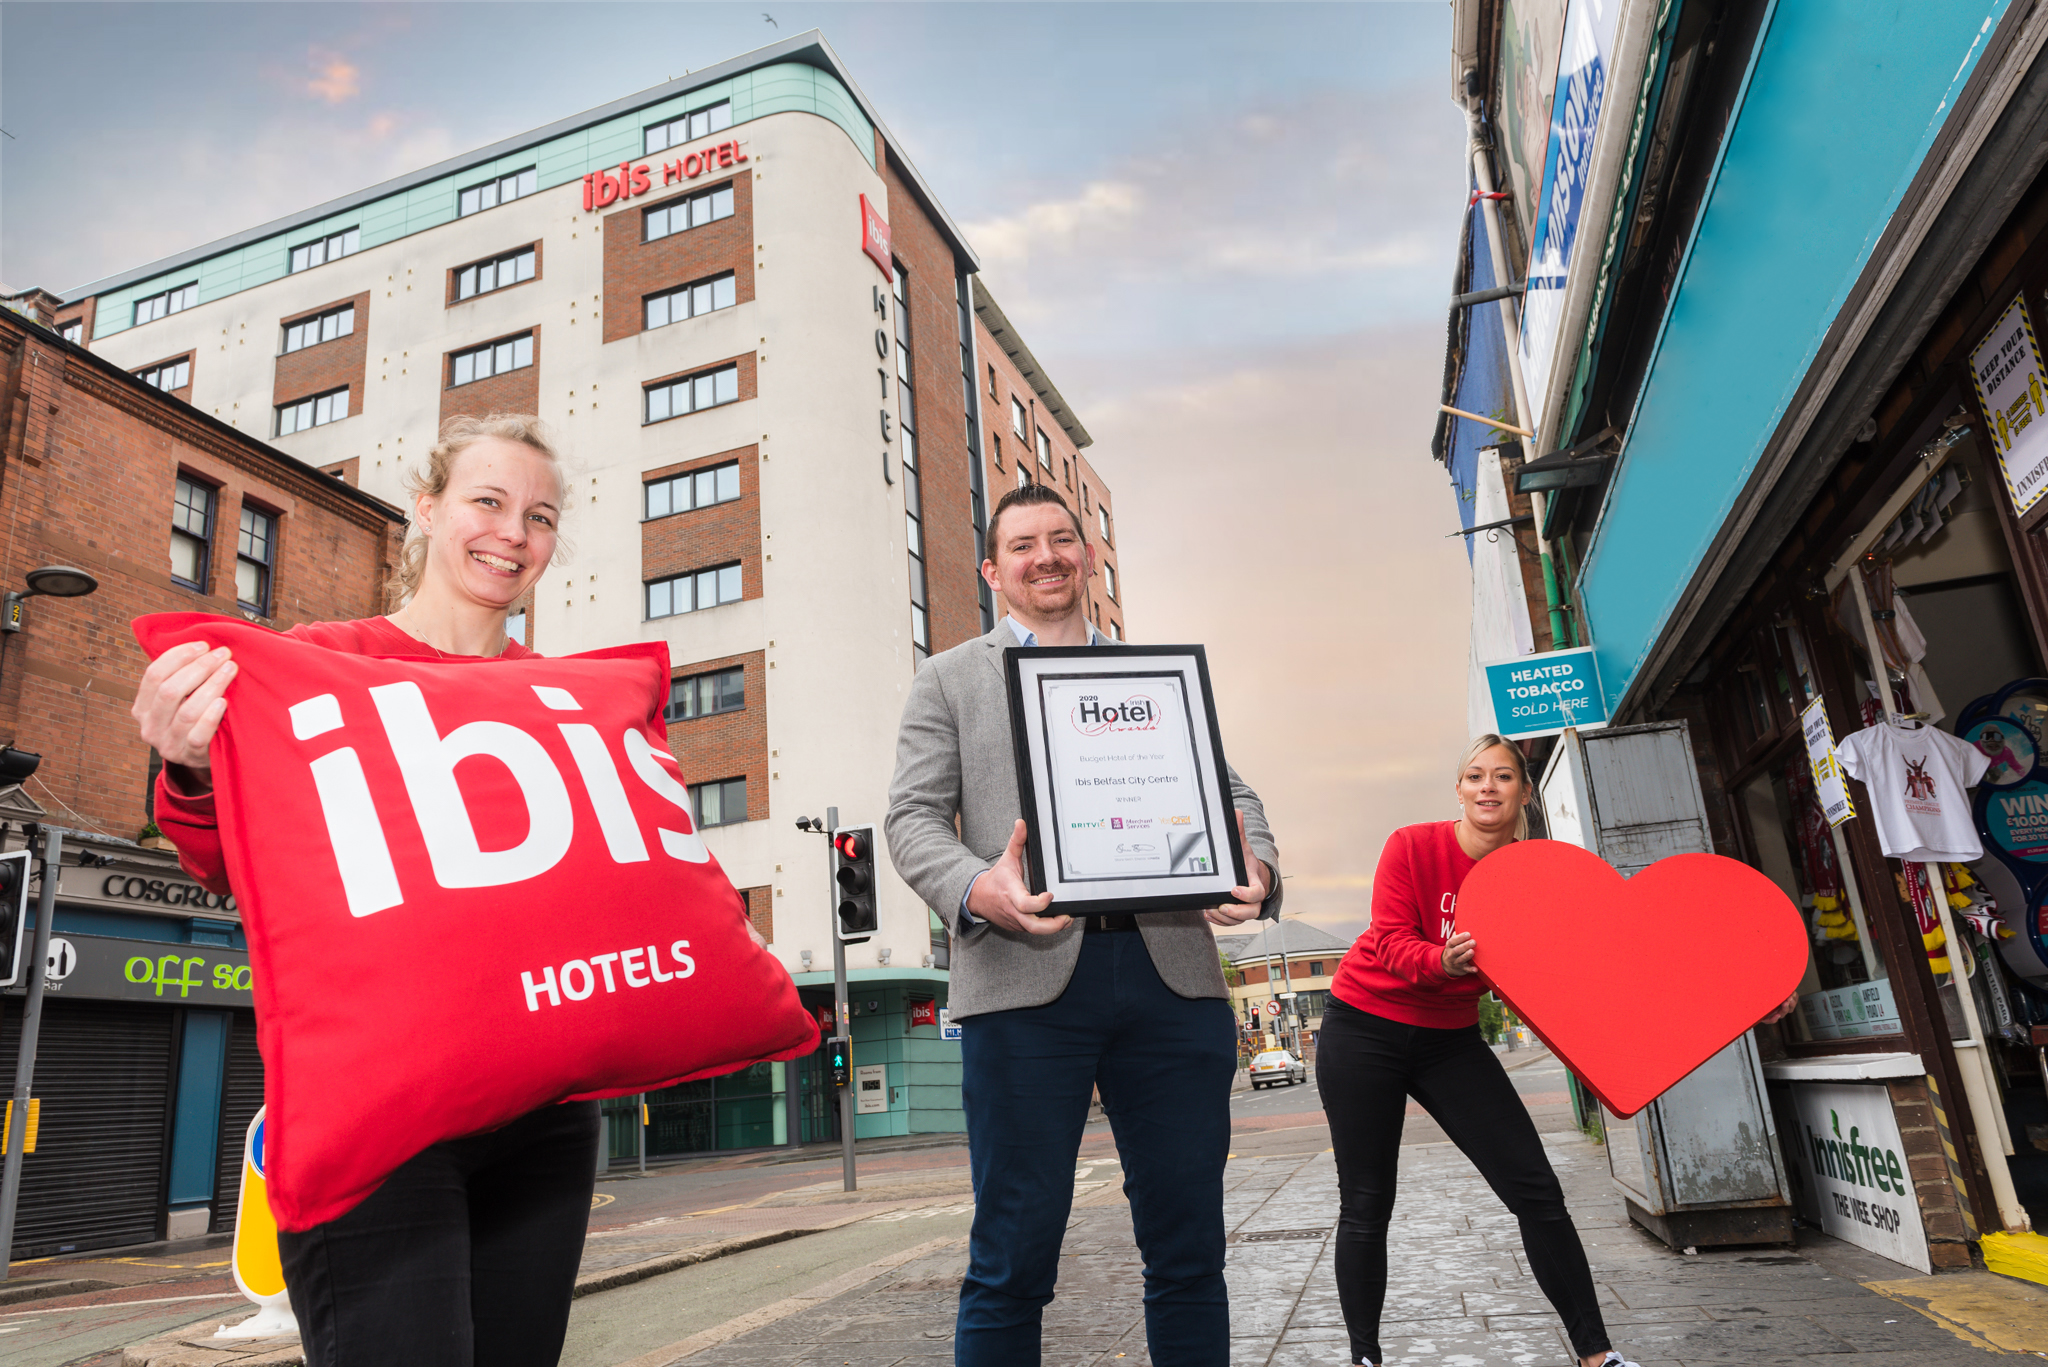 Ibis Belfast named ‘Best Budget Hotel in Ireland’